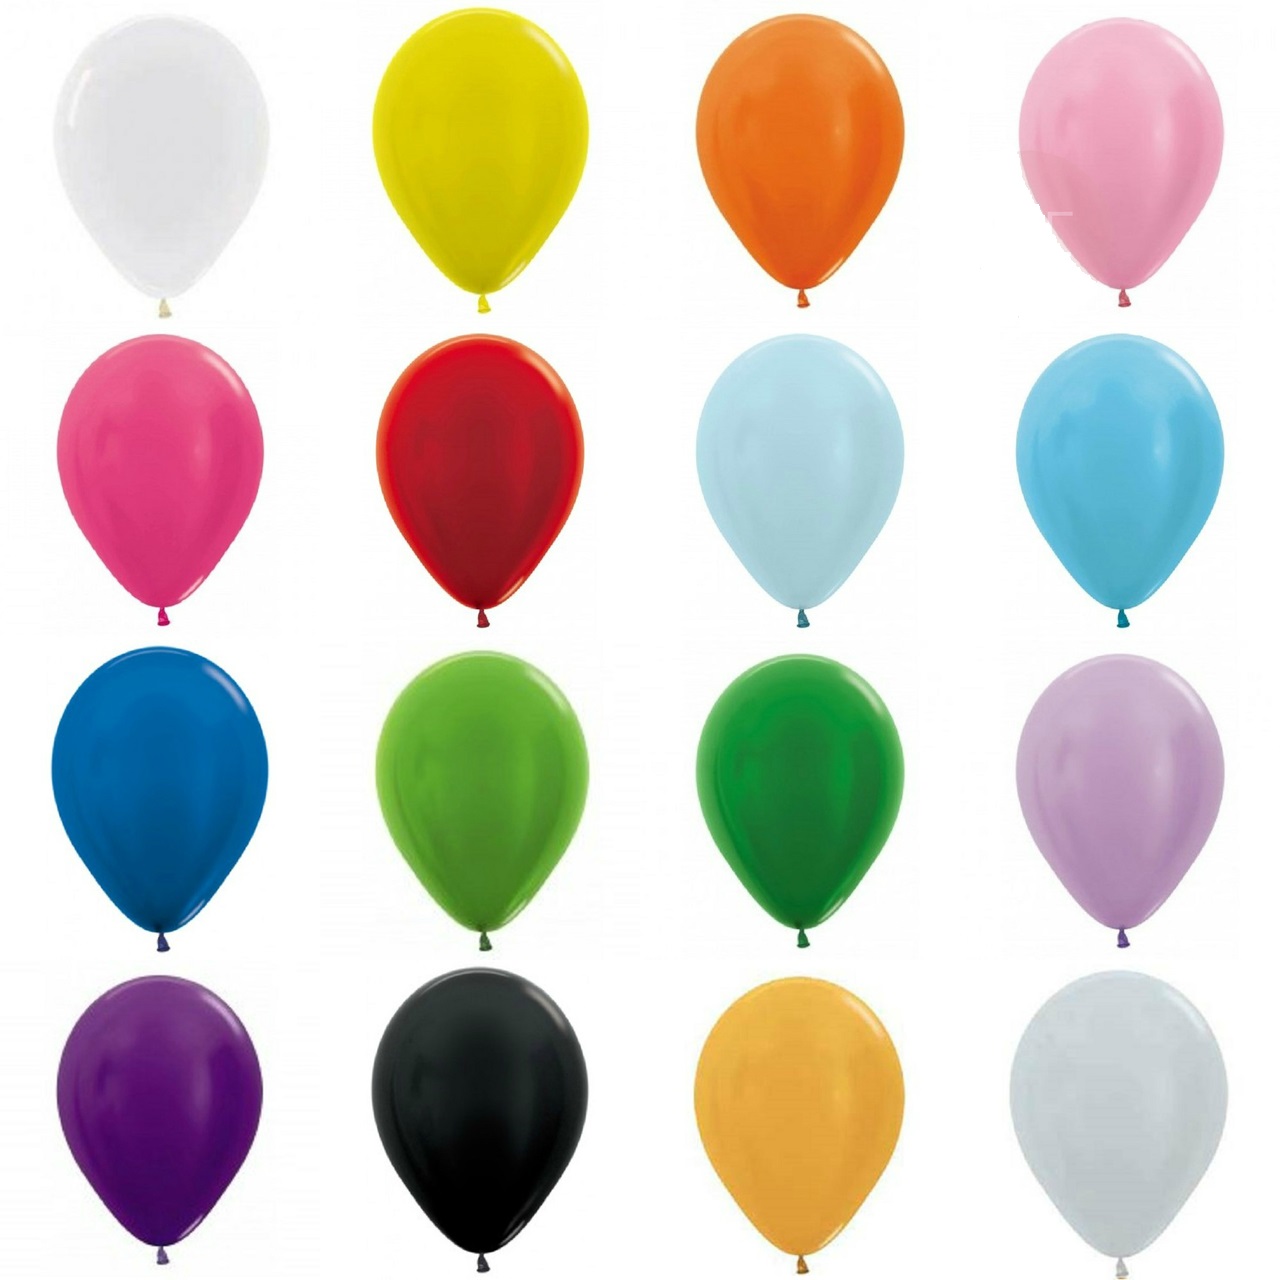 Ballons de baudruche - EVJF - lot de 10